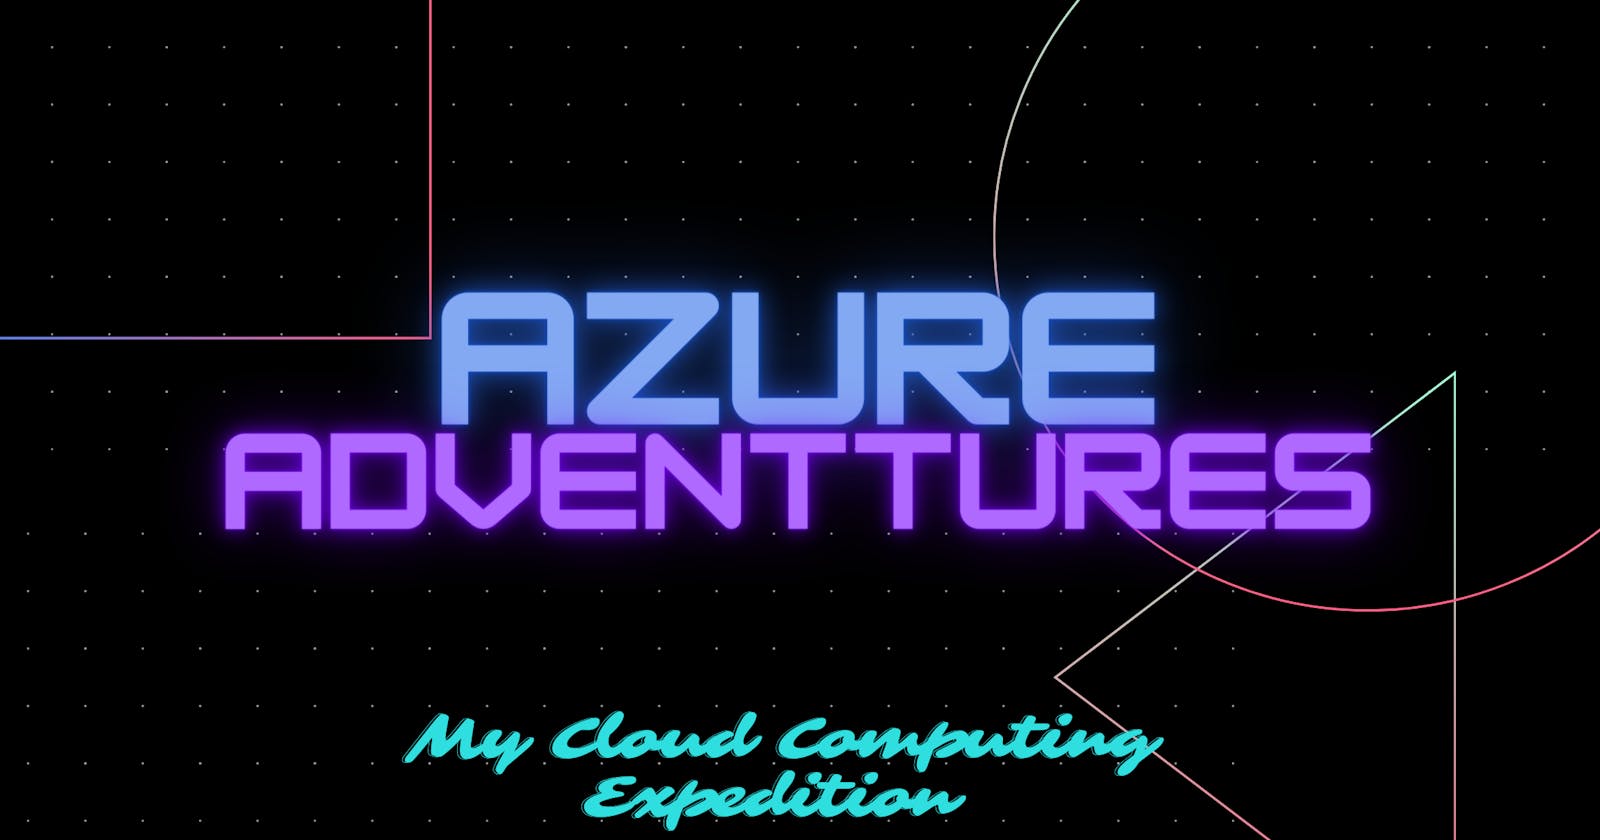 AzureAdventures: My Journey into Azure Begins!